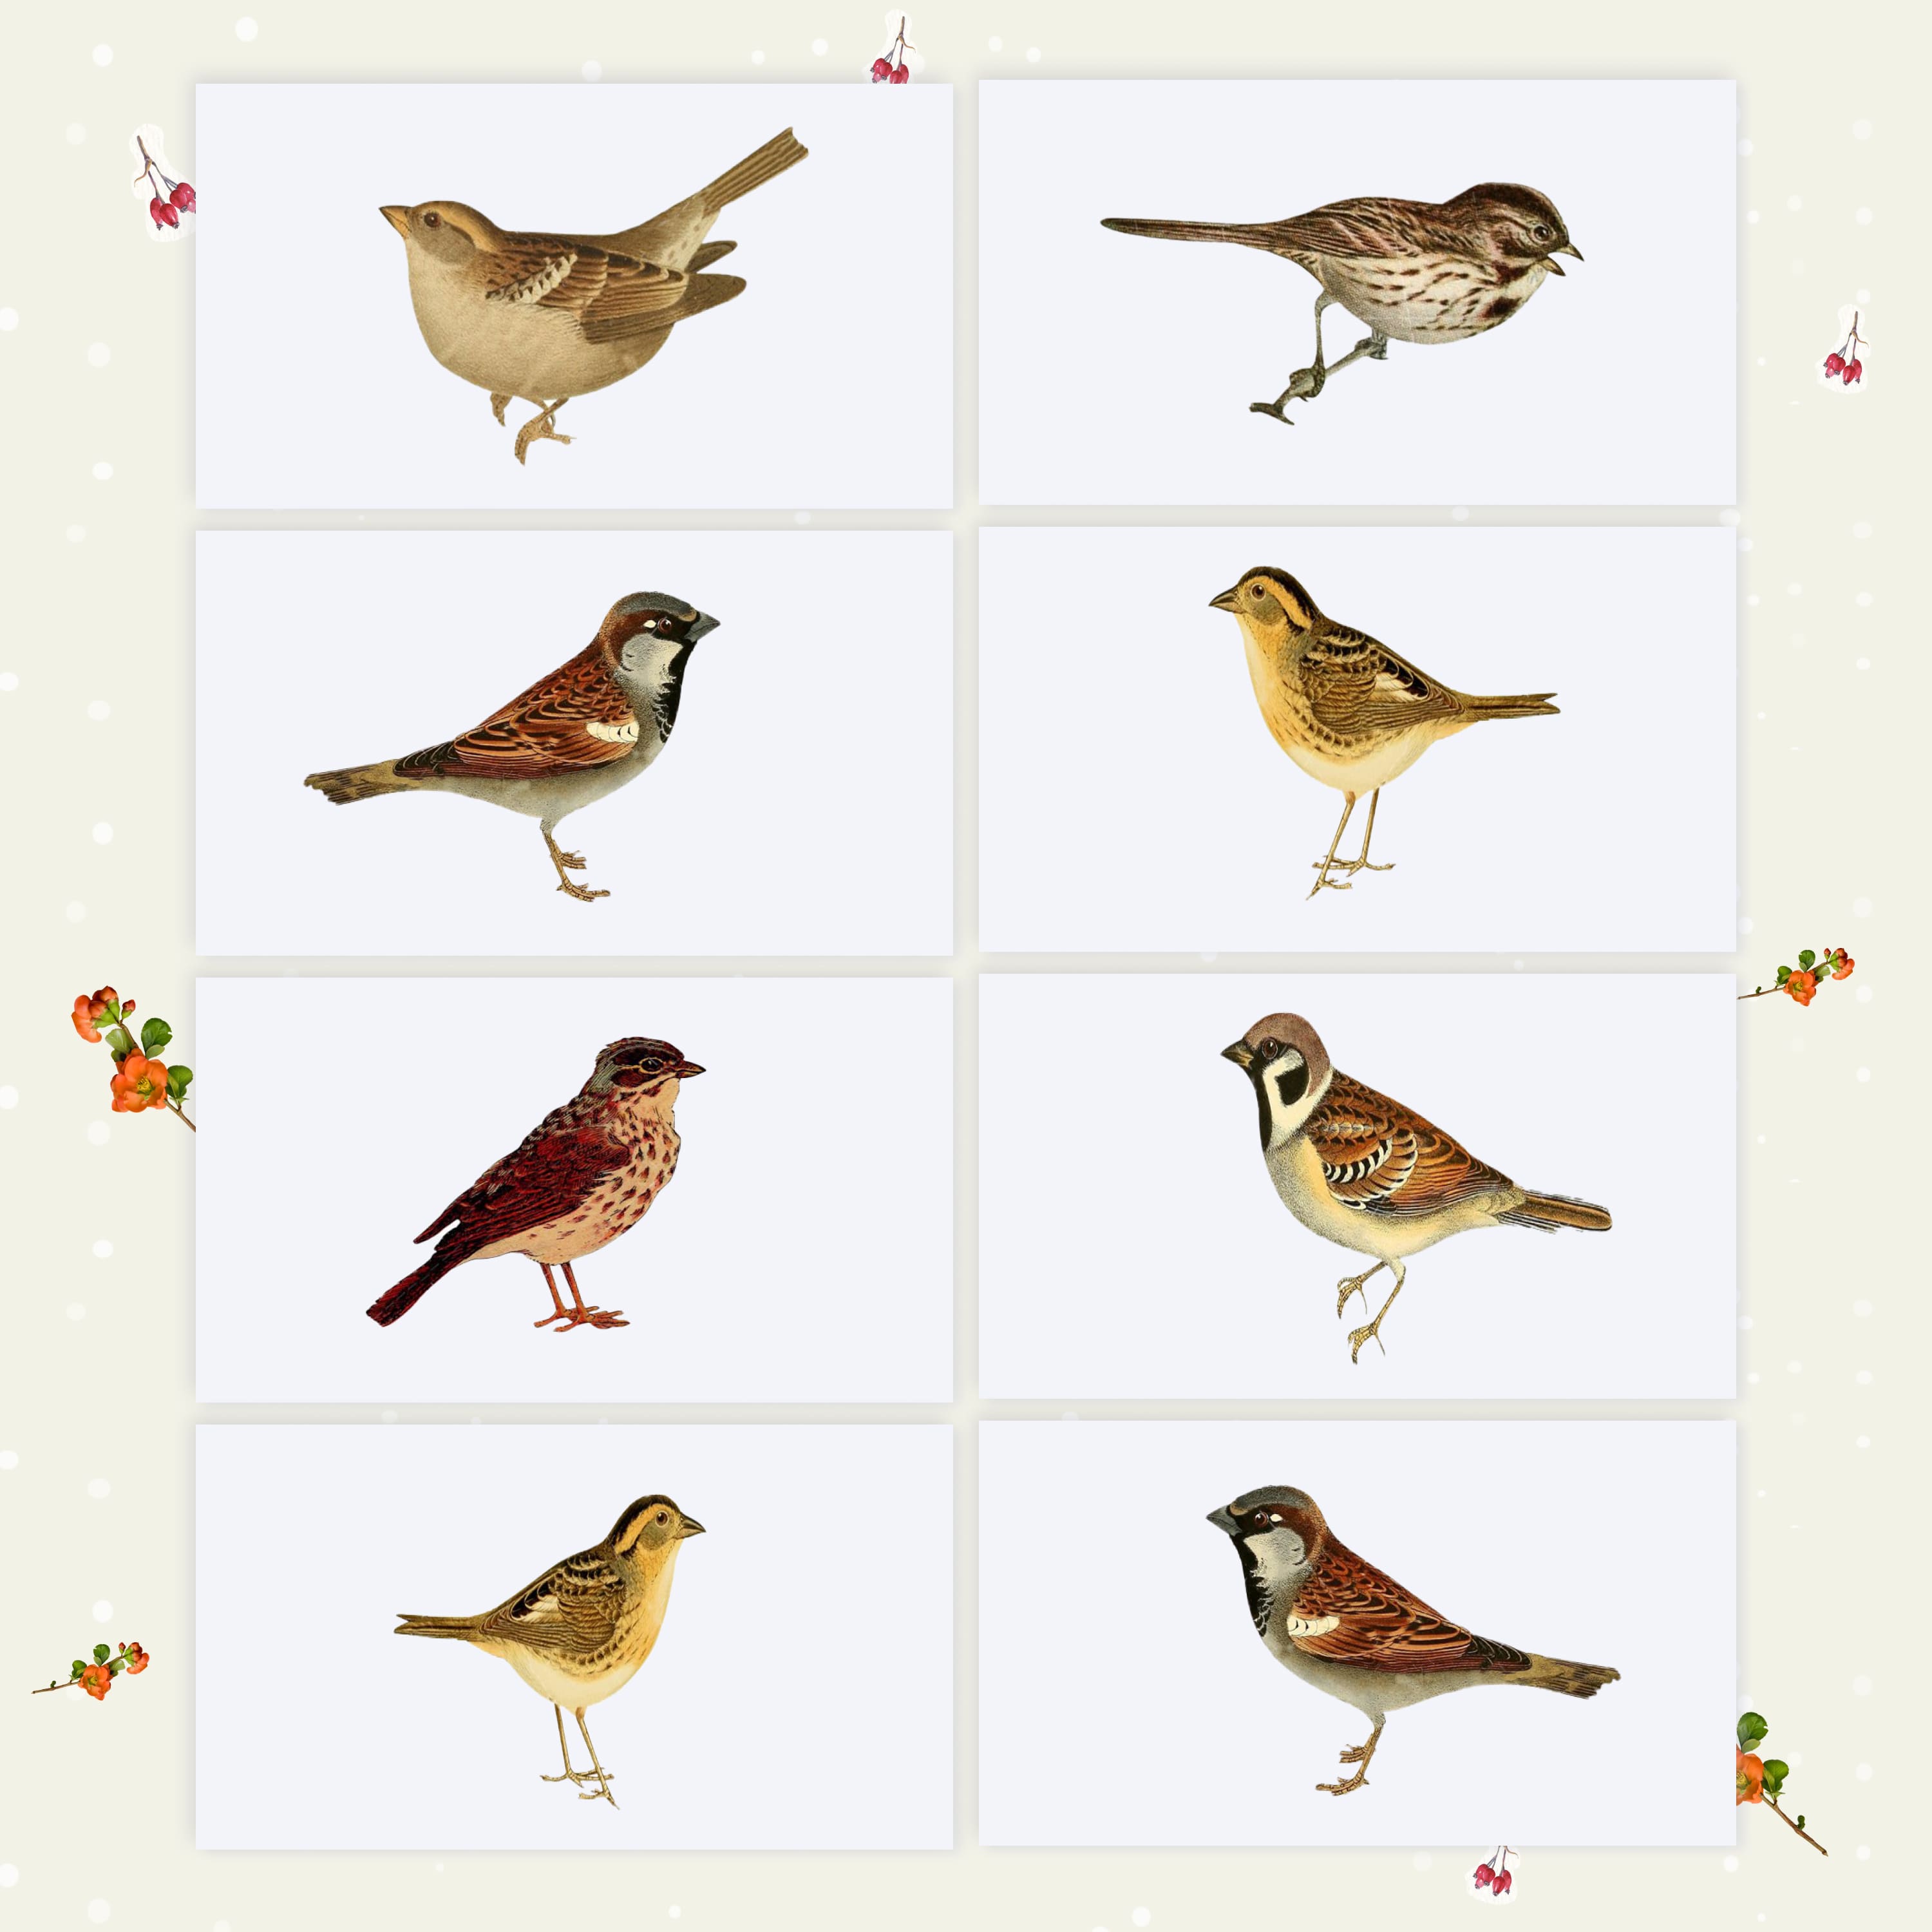 Diverse of sparrow designs.